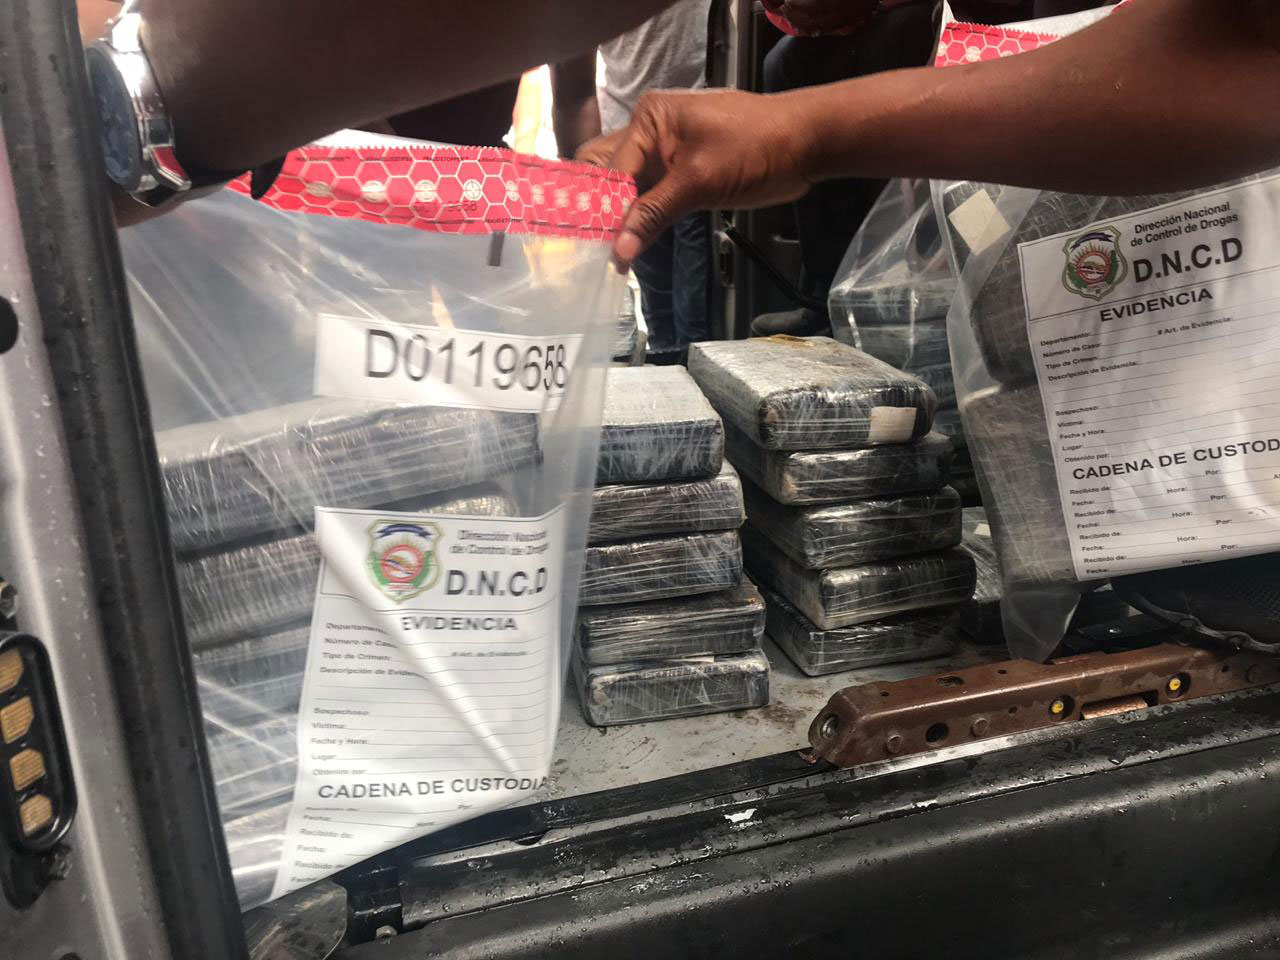 91 kilos de cocaina provincia duarte